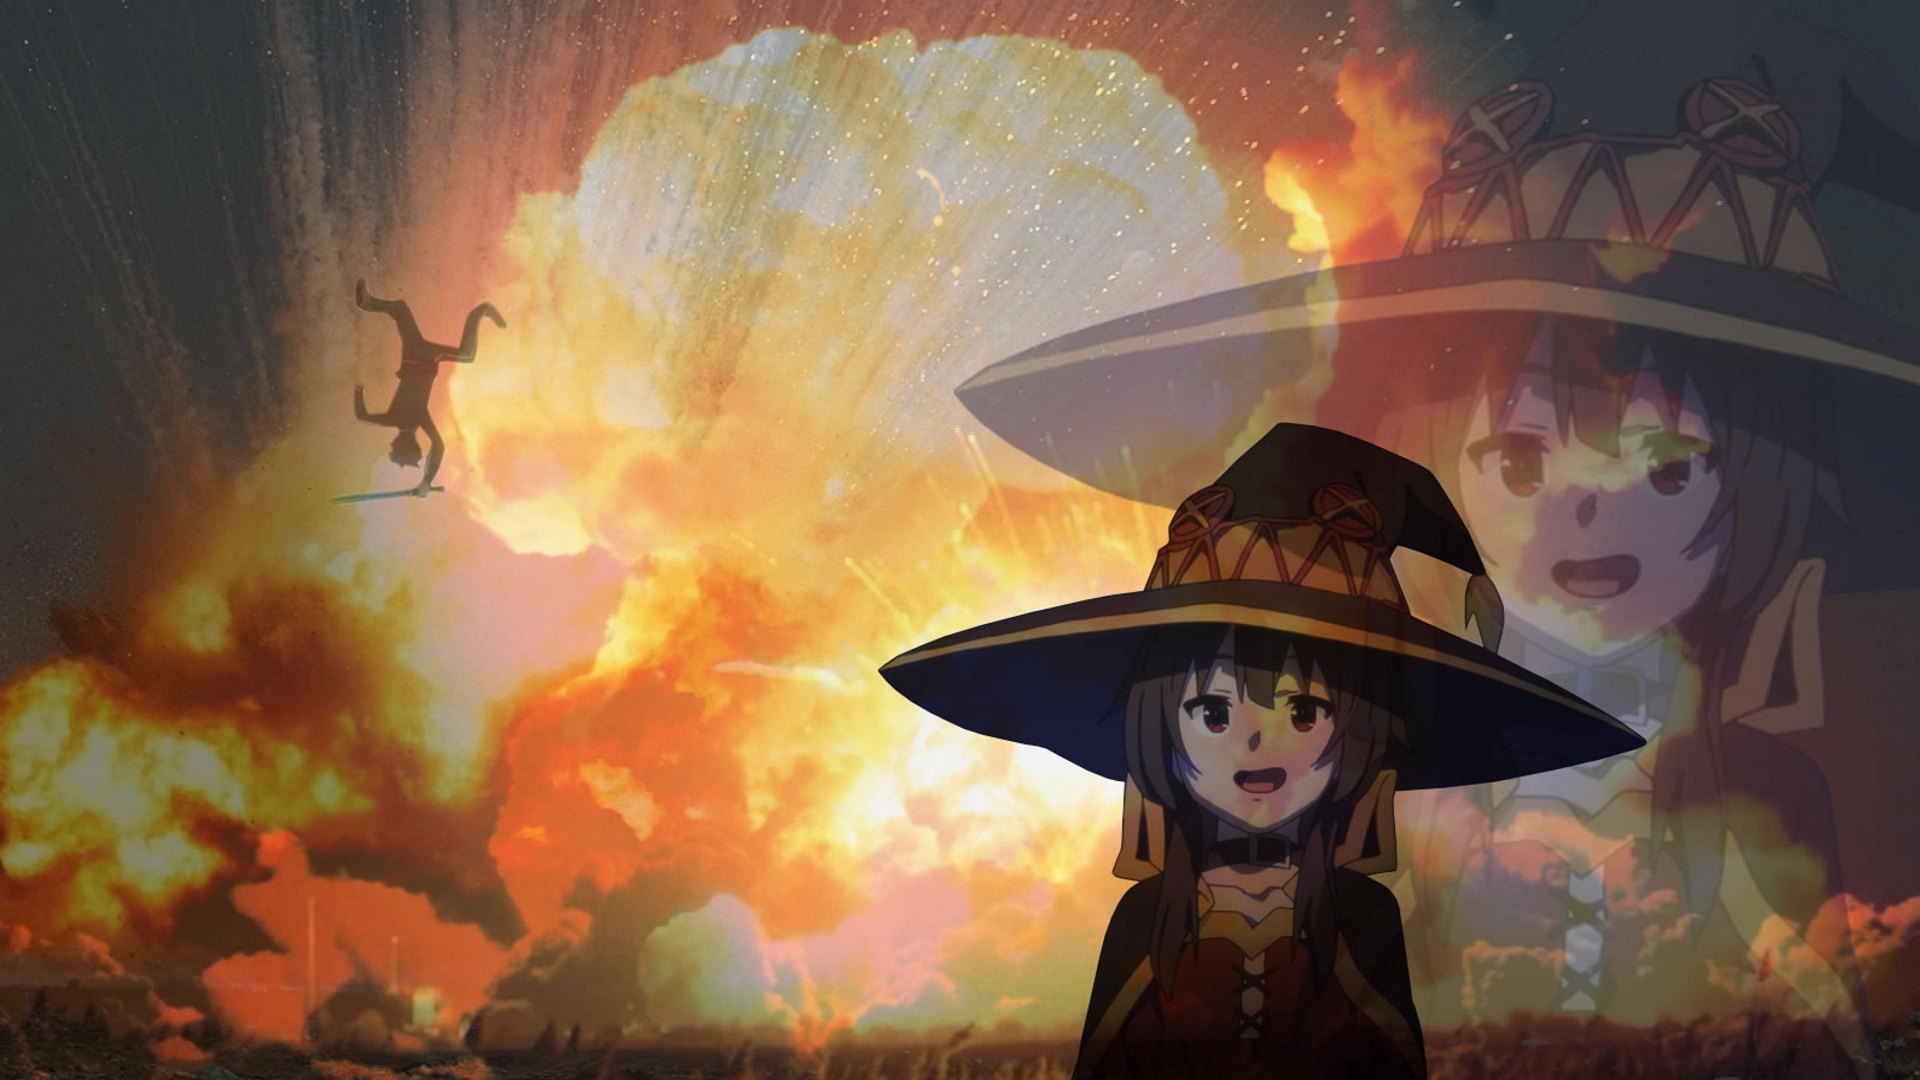 Anime 1920x1080 Kono Subarashii Sekai ni Shukufuku wo! Megumin (KonoSuba) explosion